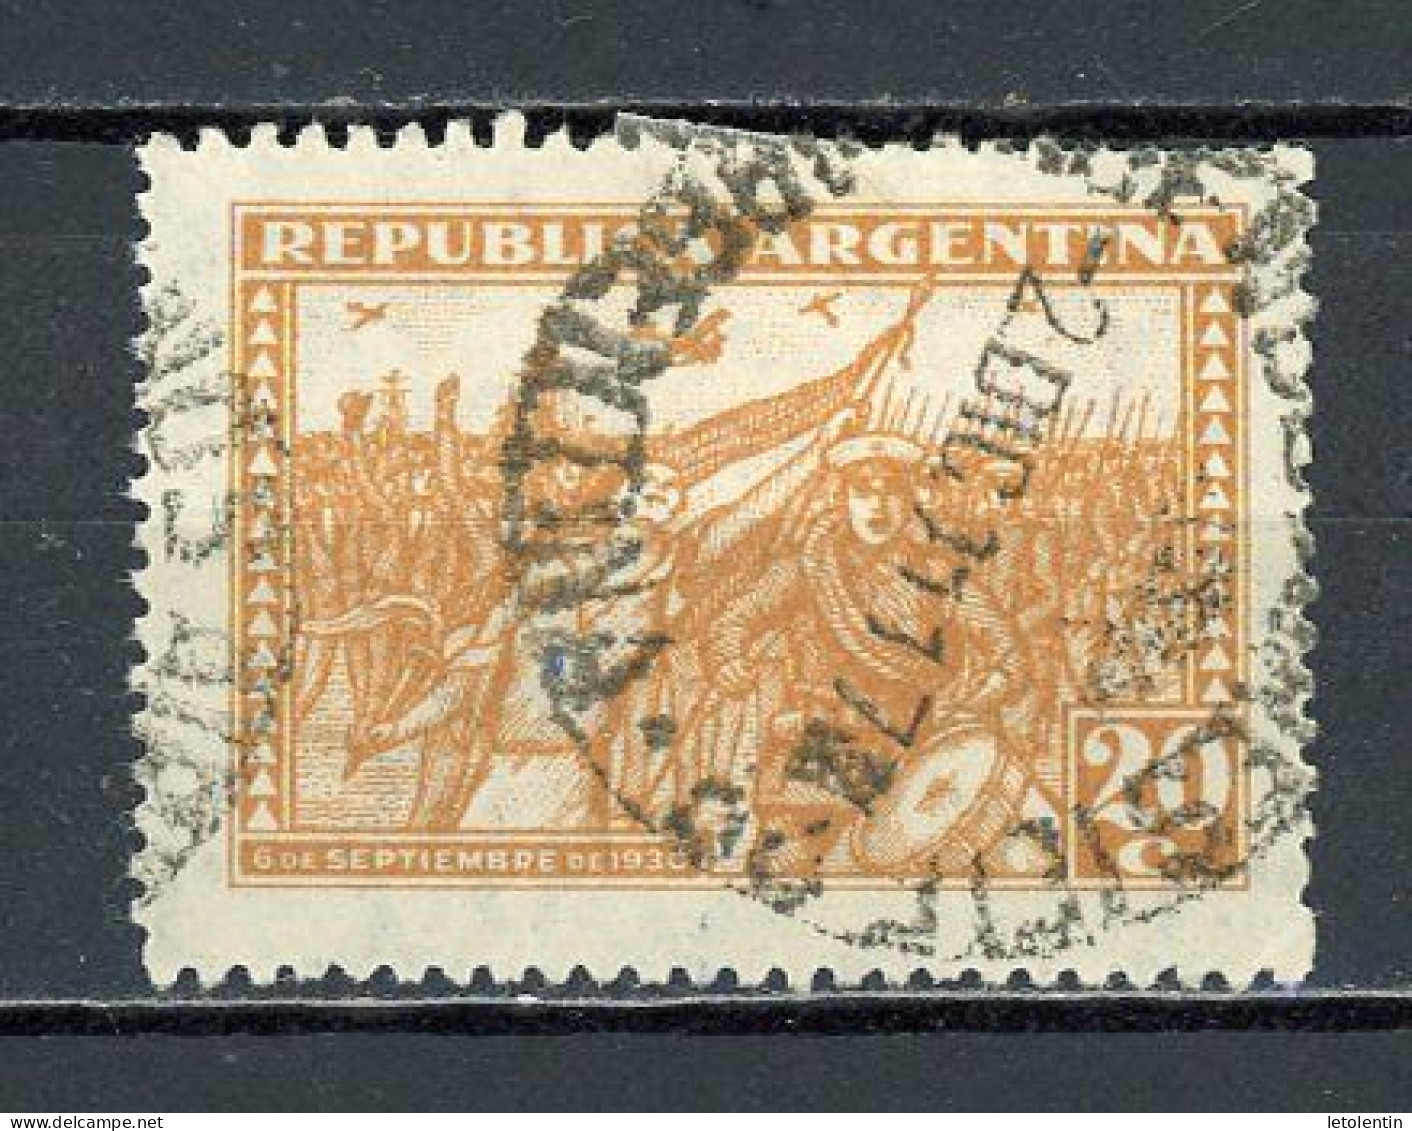 ARGENTINE : ANNI. REVOLUTION DE 1930  - N° Yvert 340 Obli. - Used Stamps